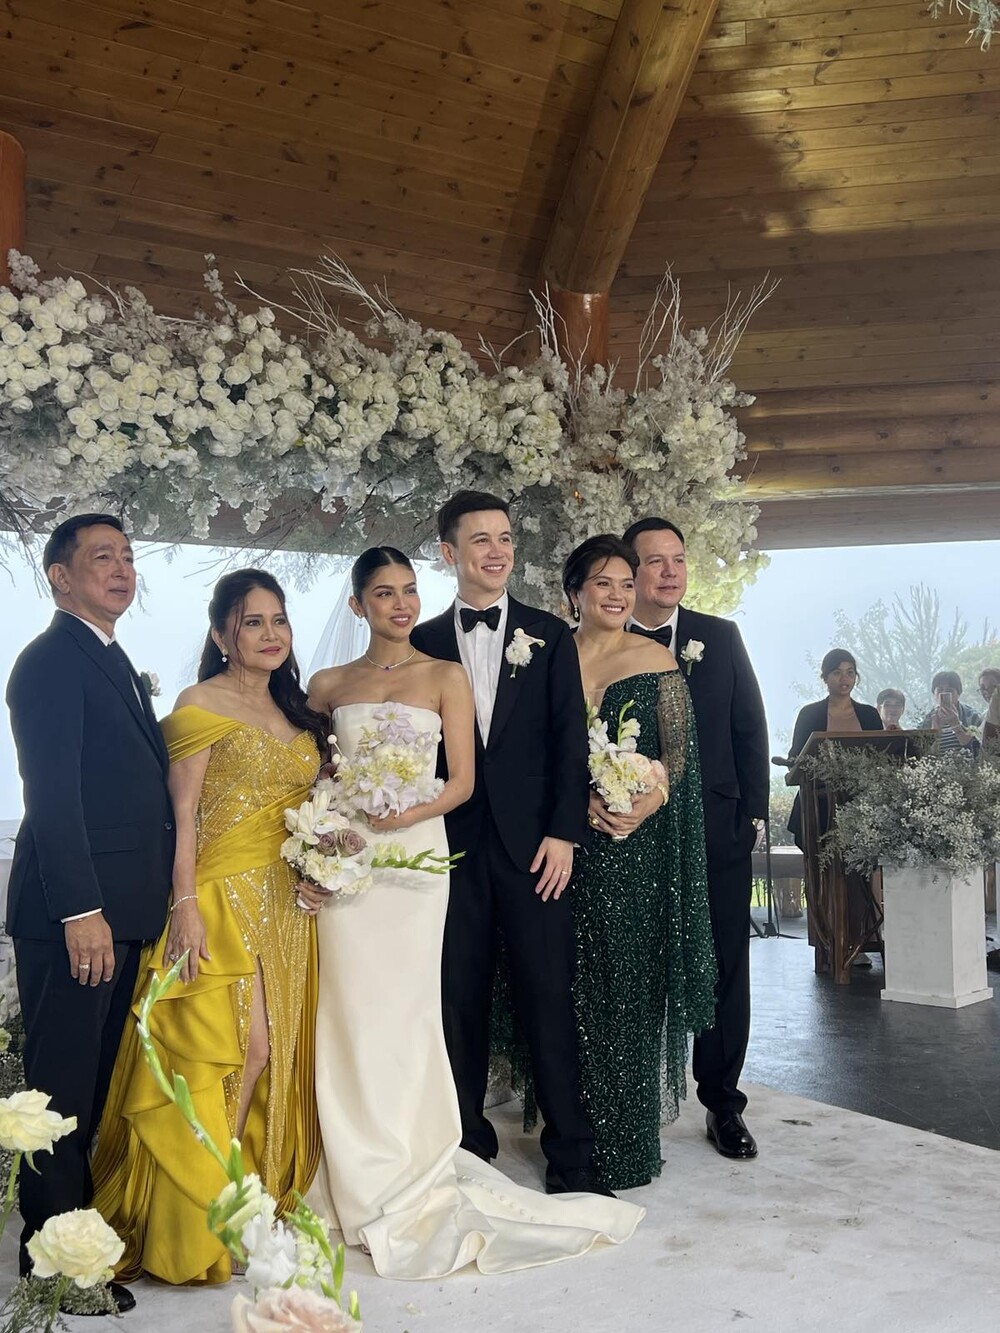 Maine Mendoza Arjo Atayde wedding guests